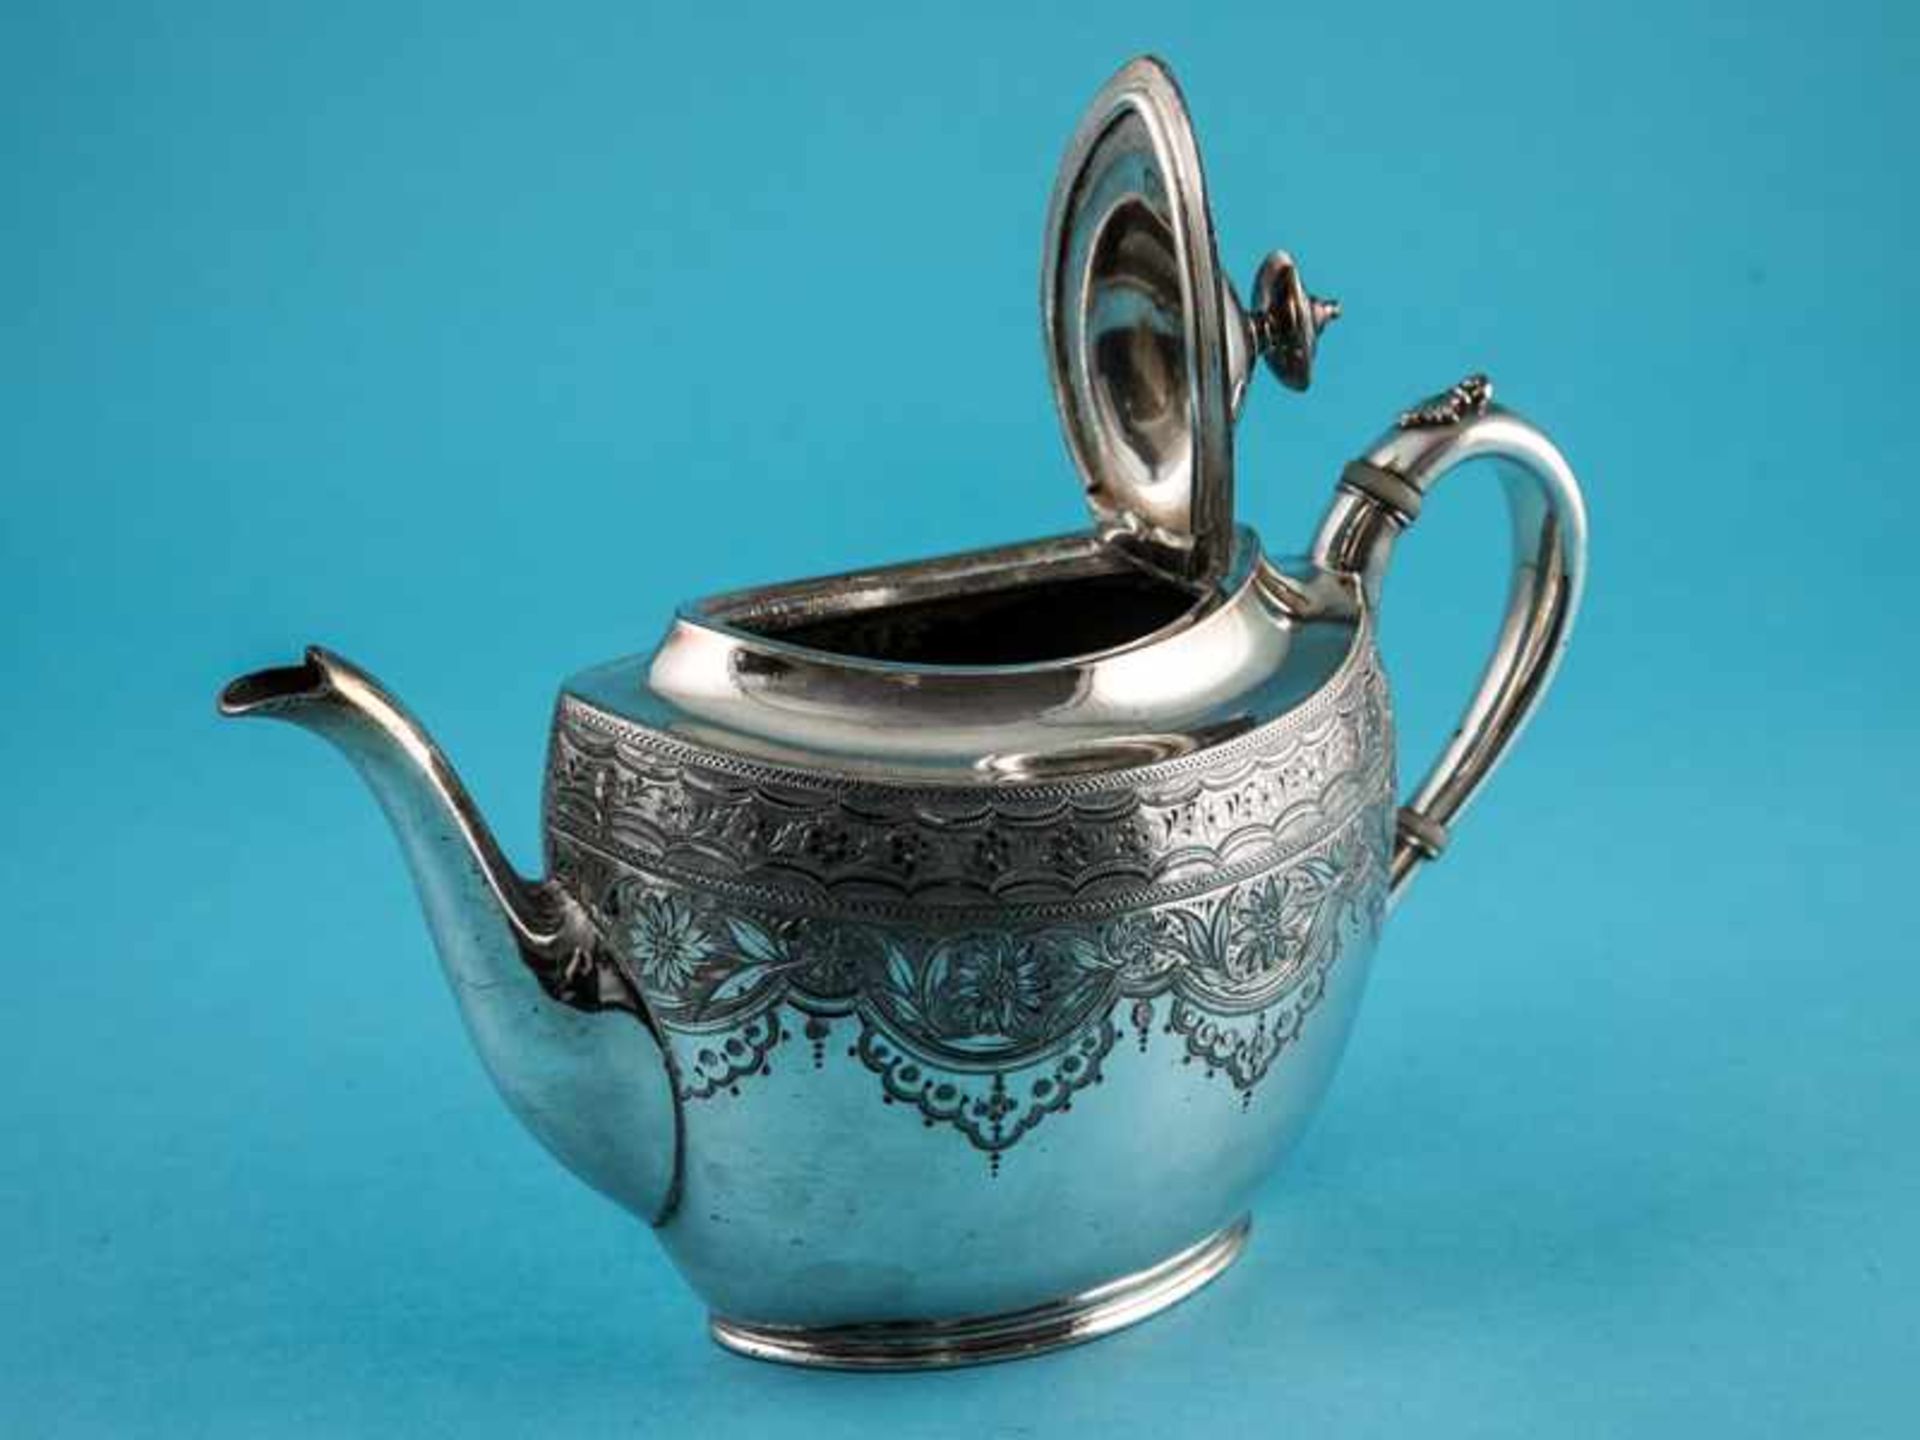 Spät-Victorianische Teekanne, James Dixon & Sons, Sheffield, England, Ende 19. Jh. Versilbert auf - Bild 2 aus 7